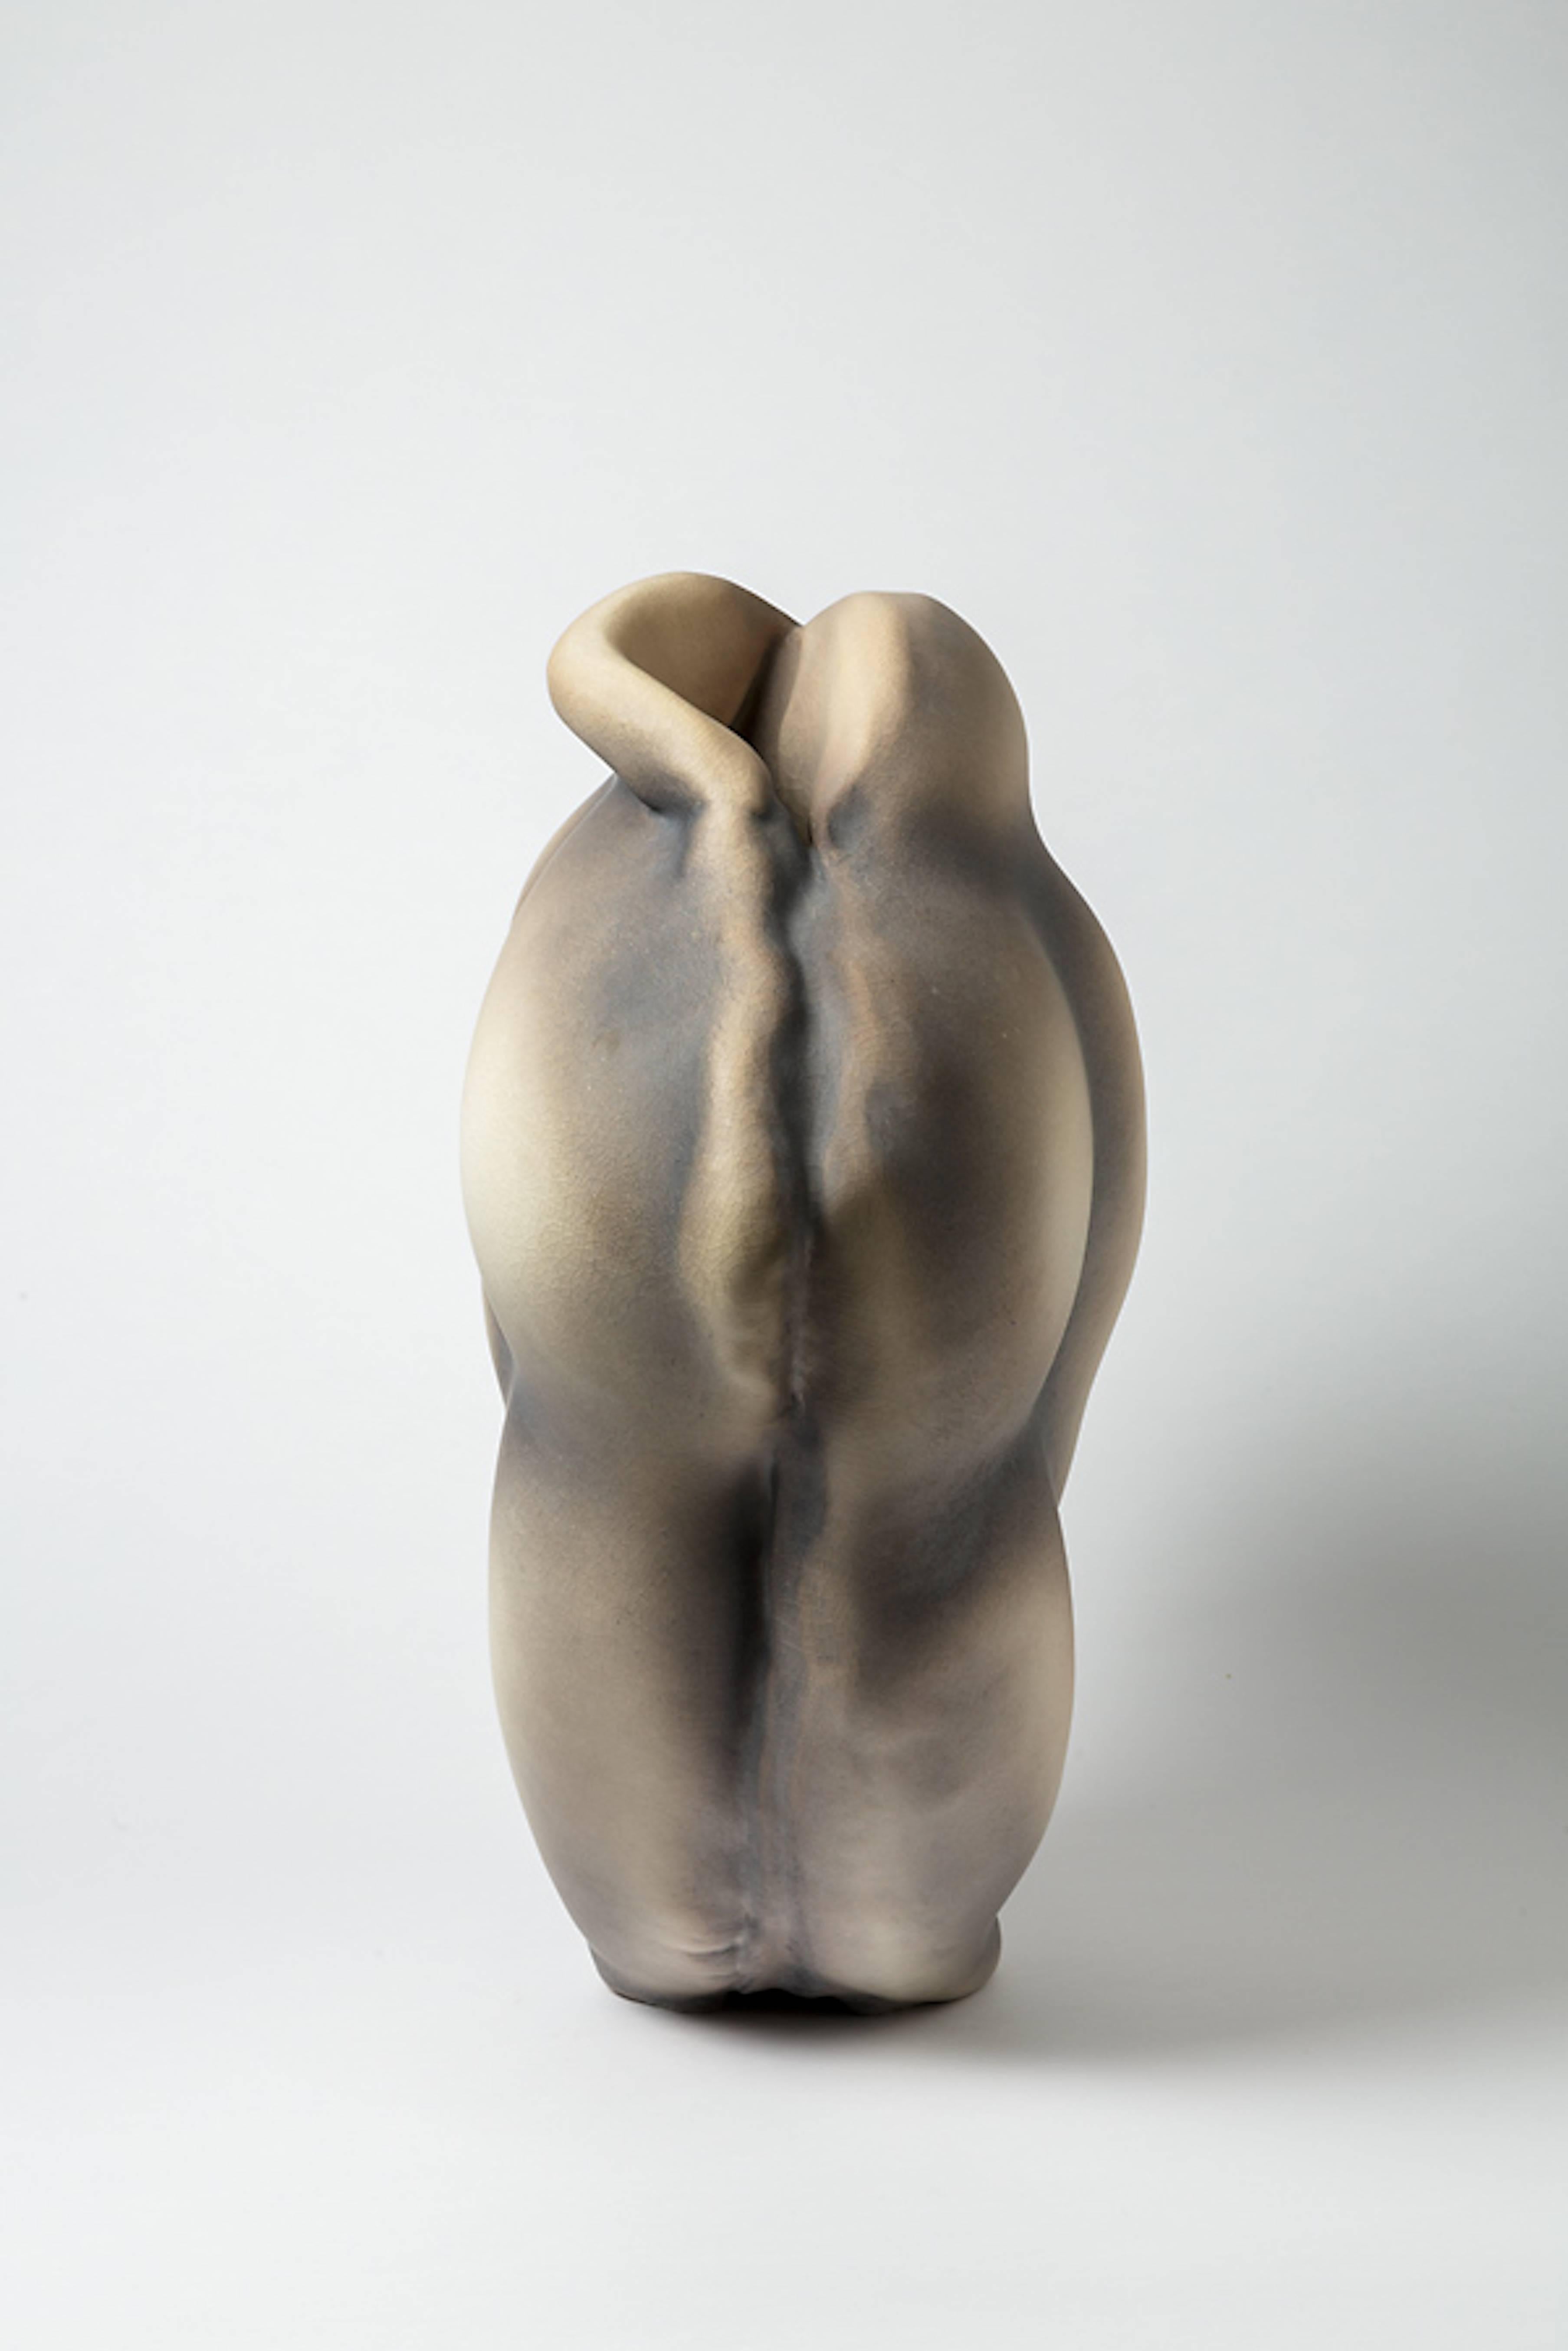 Porcelain Sculpture by Wayne Fischer, circa 2016 (21. Jahrhundert und zeitgenössisch)